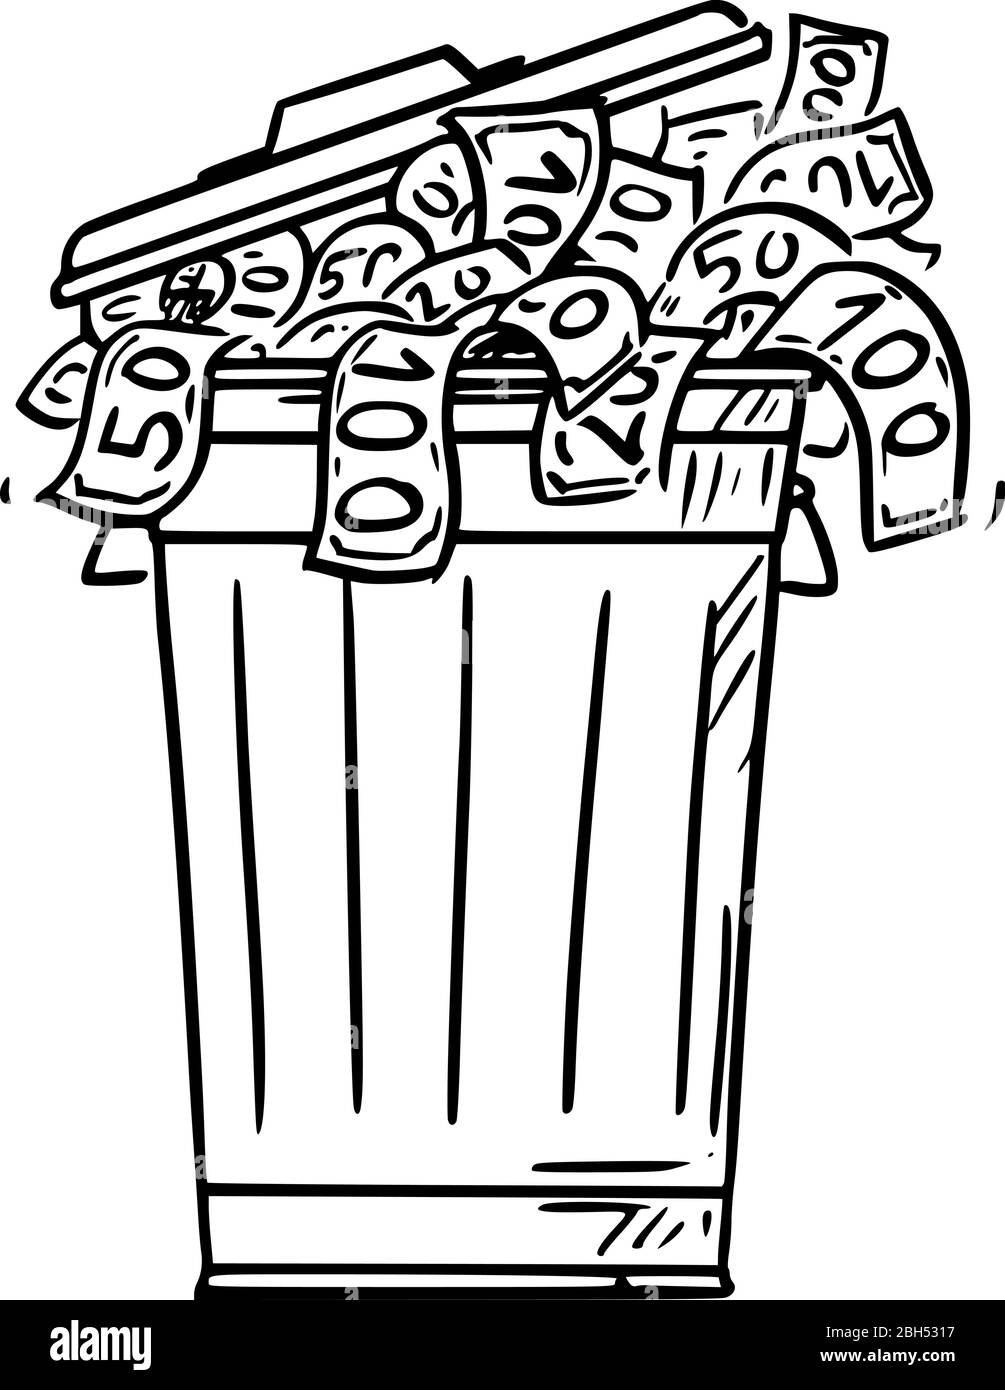 Vektor Cartoon Stick Figur Zeichnung konzeptionelle Illustration von Mülleimer, Mülltonne oder Mülltonne voll von Bargeld Geldscheine als Abfall geworfen. Stock Vektor